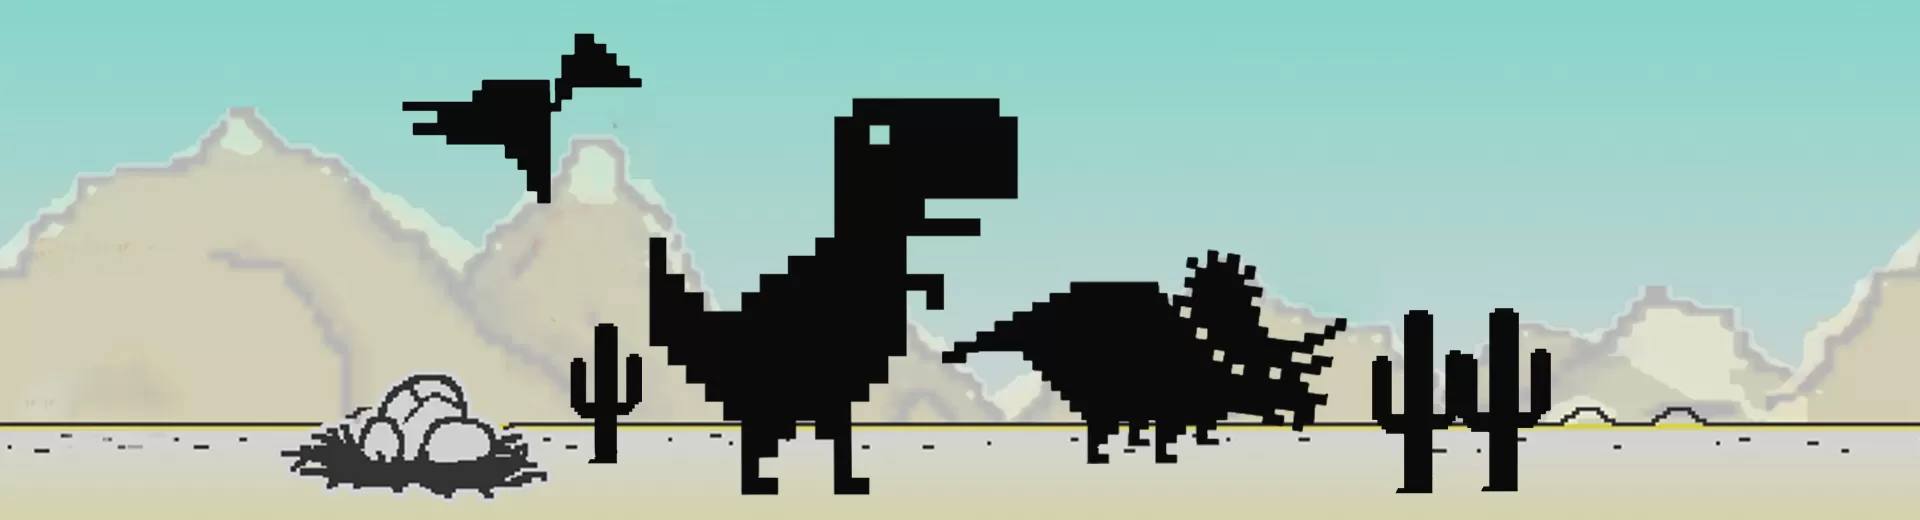 Dino T Rex Emulator Pc 1